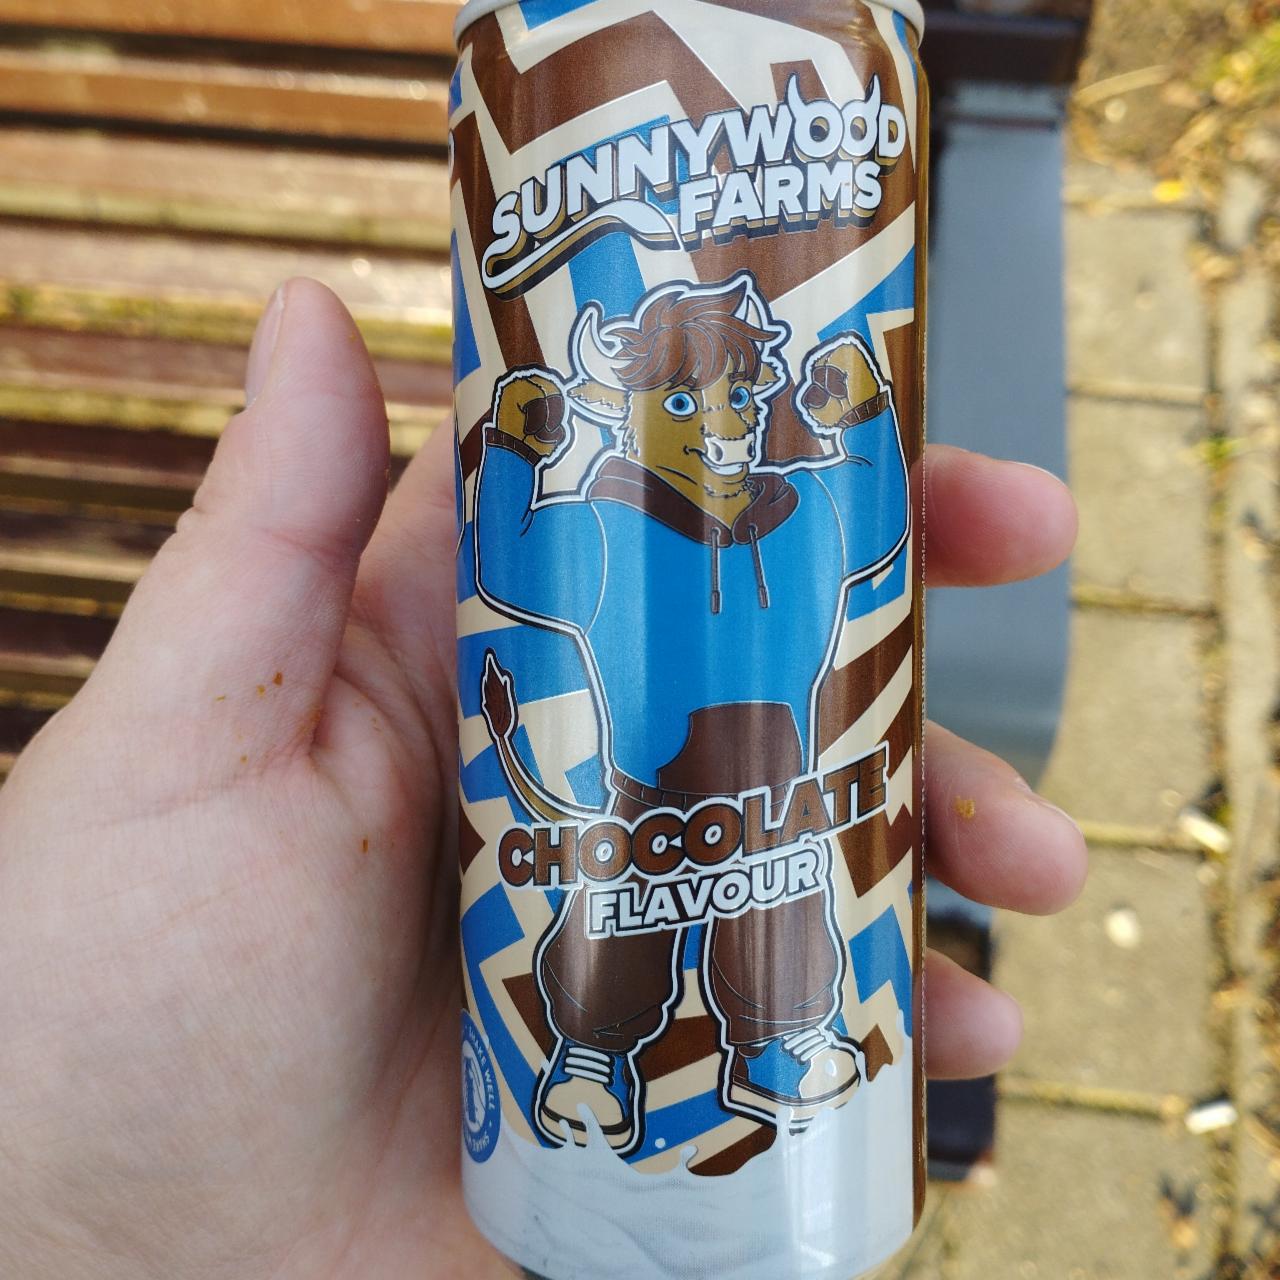 Képek - Chocolate flavour drink Sunnywood farms